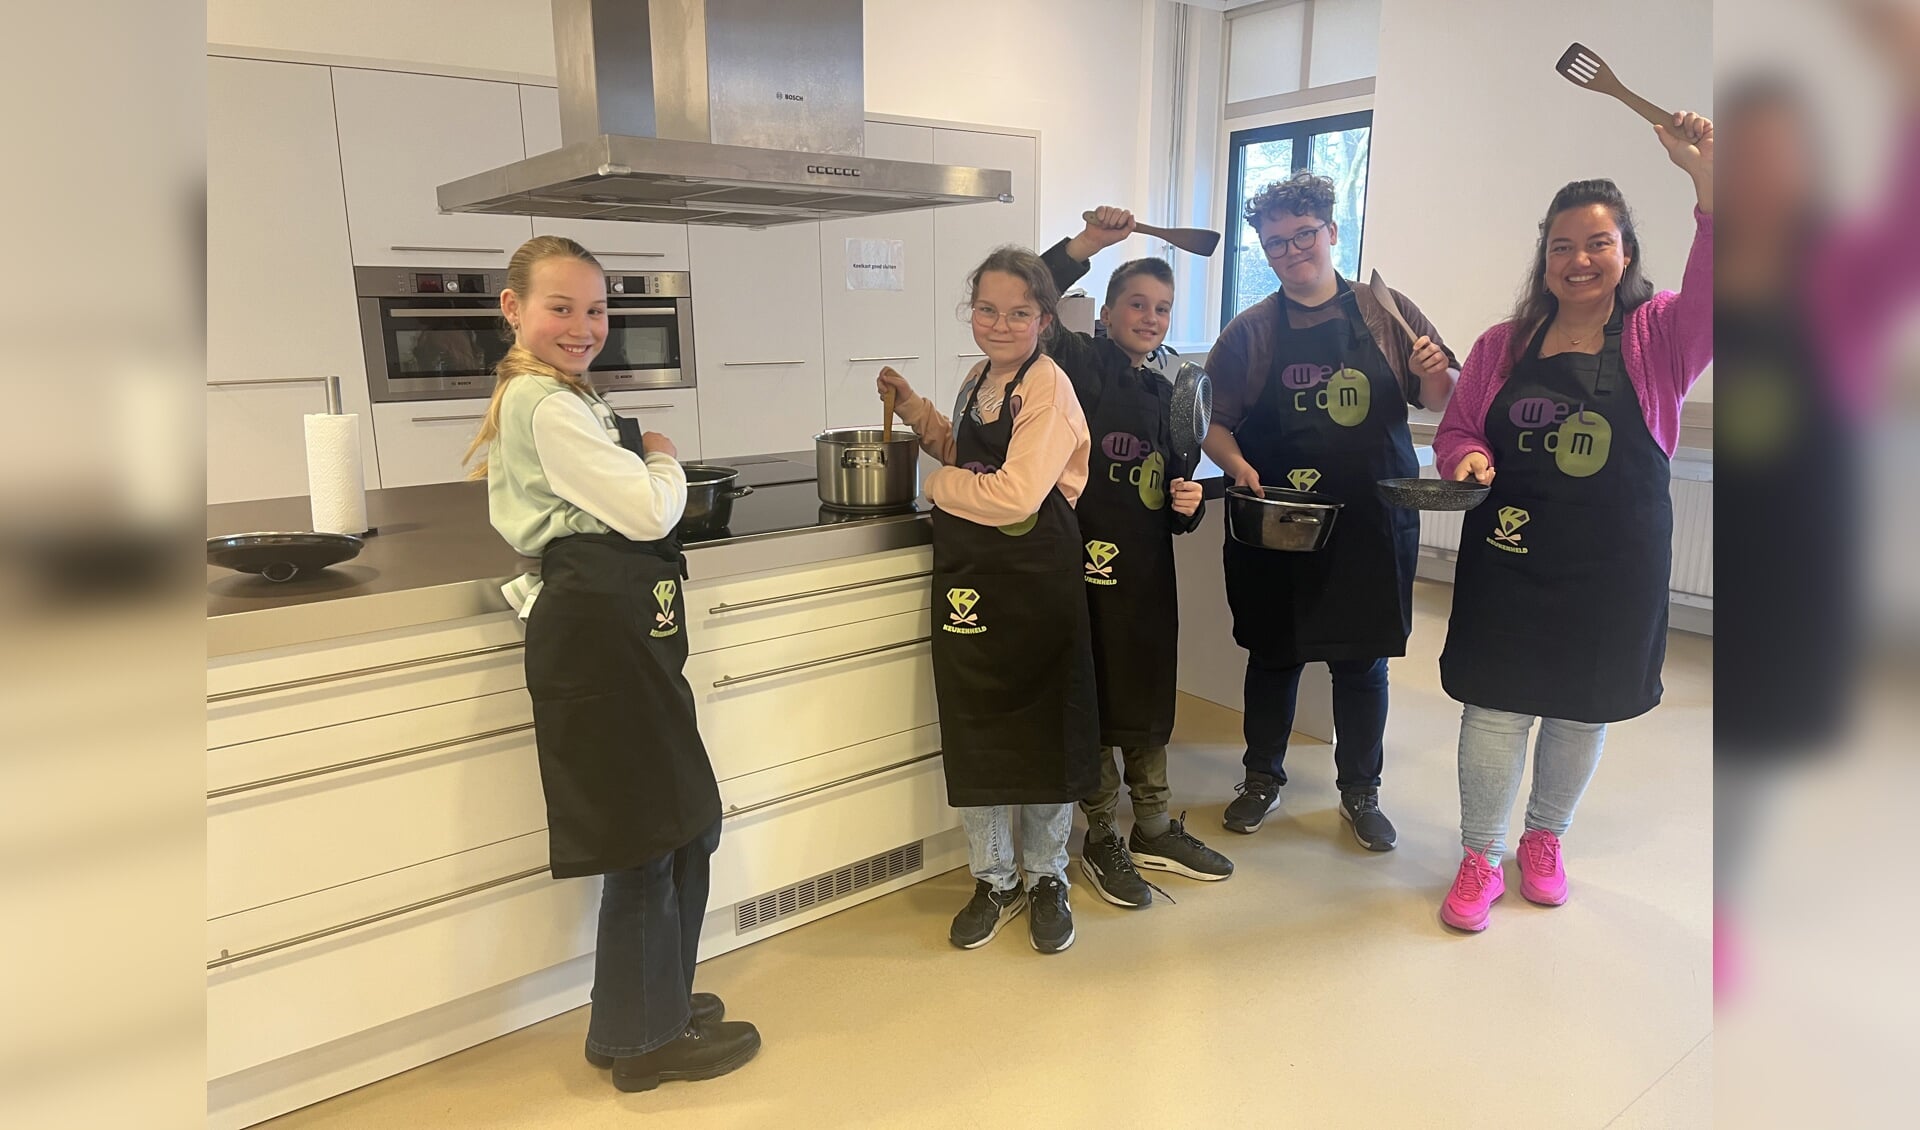 Met nieuwe schorten zijn Fem, Jennefer, Teun, Lizzy en Dieske helemaal klaar voor het kookproject. Foto: Karin van der Velden